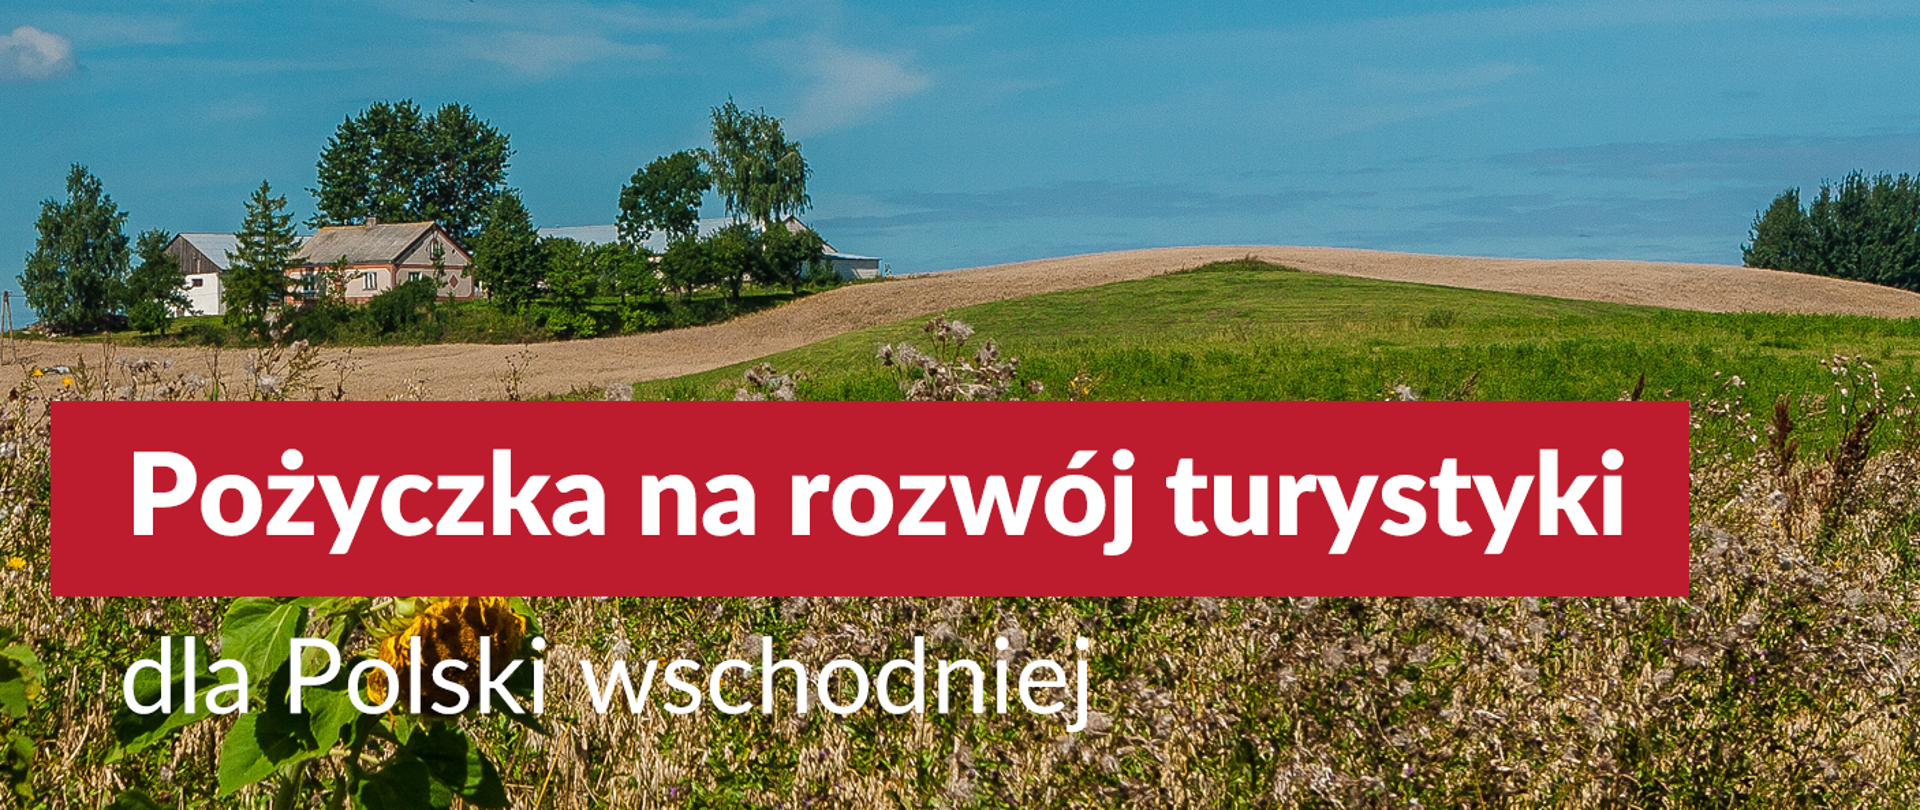 Preferencyjne pożyczki dla przedsiębiorców na rozwój turystyki w Polsce Wschodniej - napis na tle zdjęcia przedstawiającego pagórkowaty, letni pejzaż pól i domostw